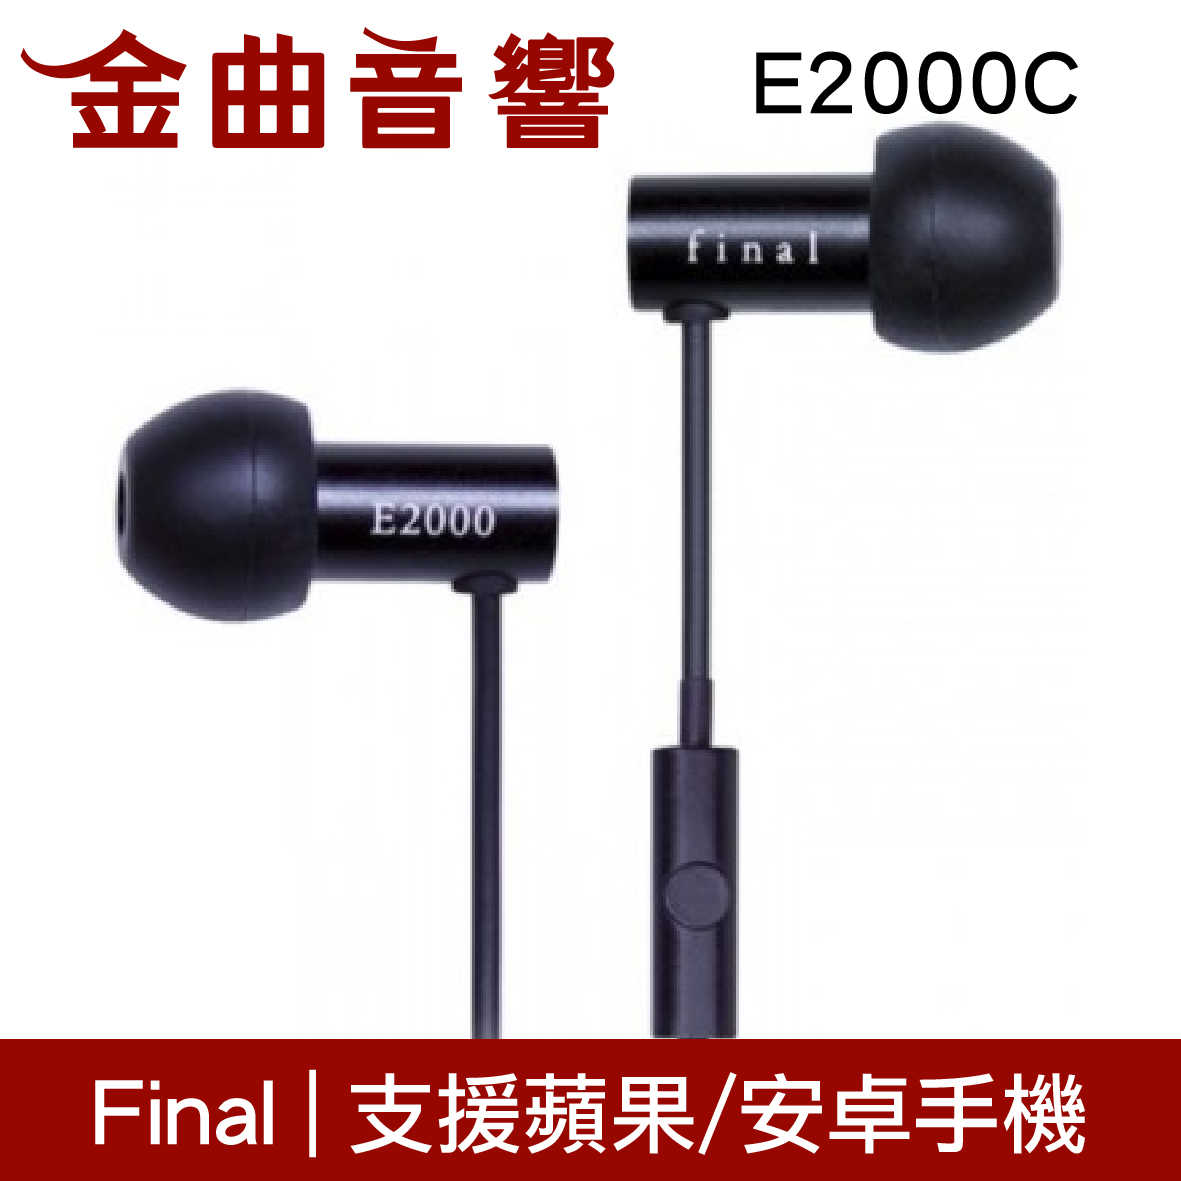 Final 支援智慧型手機 E2000 耳道式耳機 只有黑色無線控 | 金曲音響